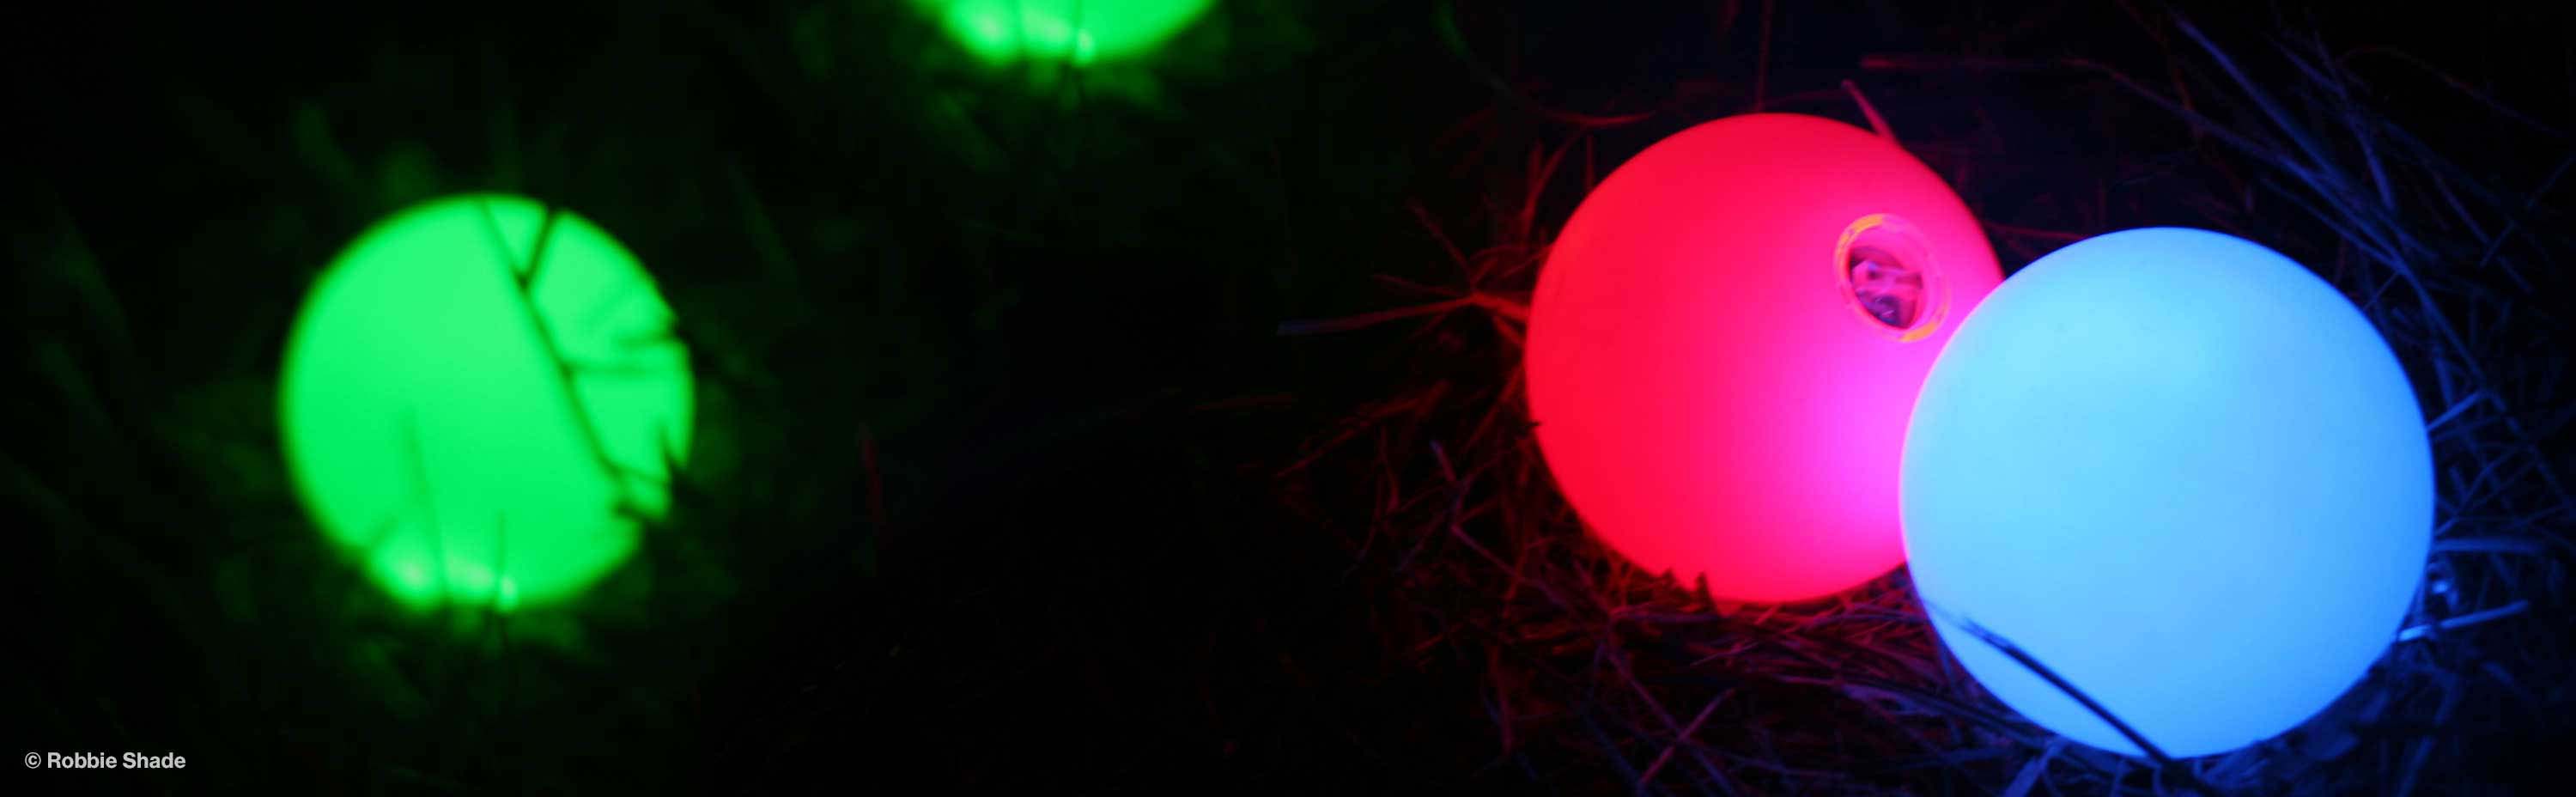 Glow Juggling Balls